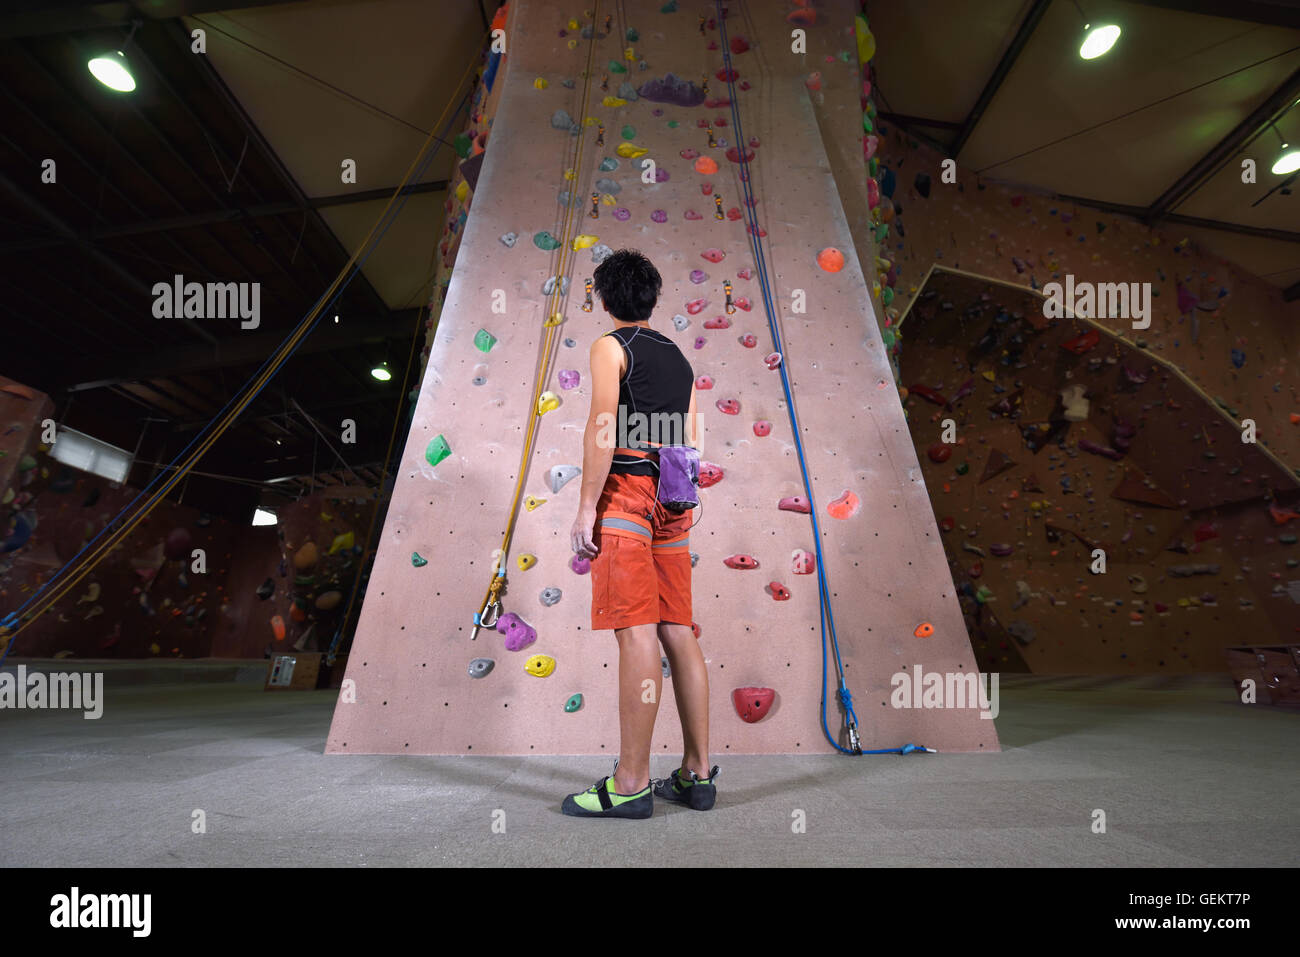 Athlète escalade japonais s'apprête à escalader le mur de sport Banque D'Images